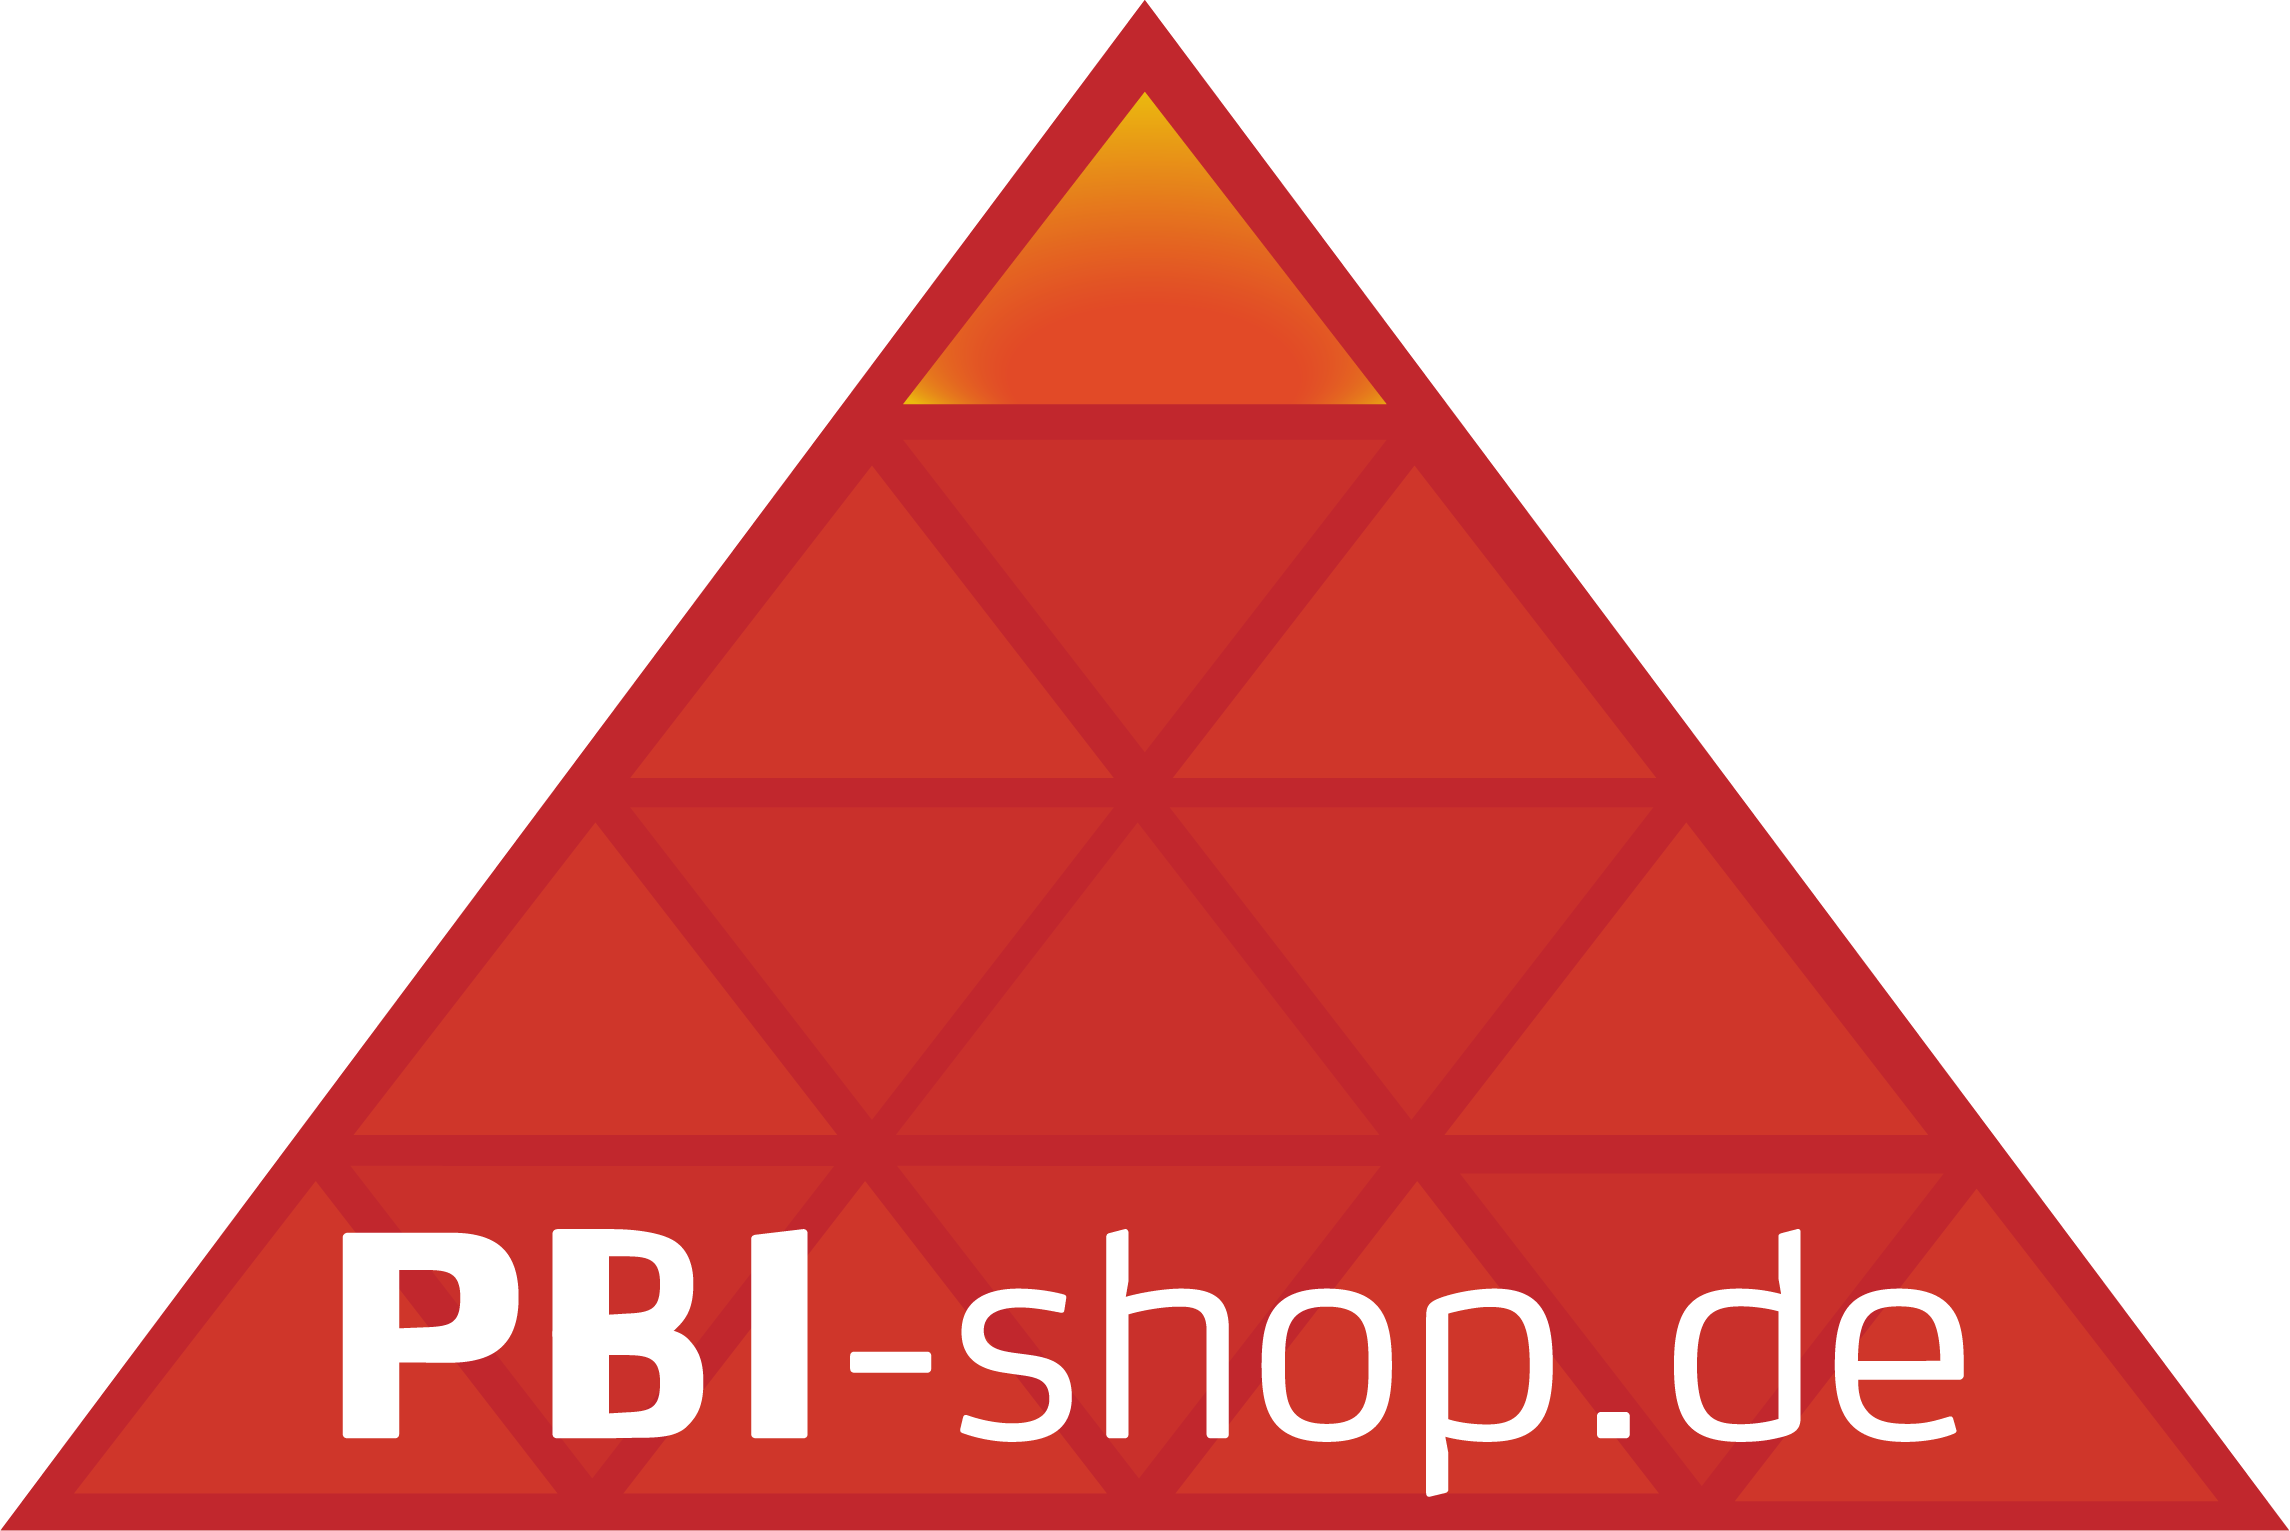 PBI-shop.de